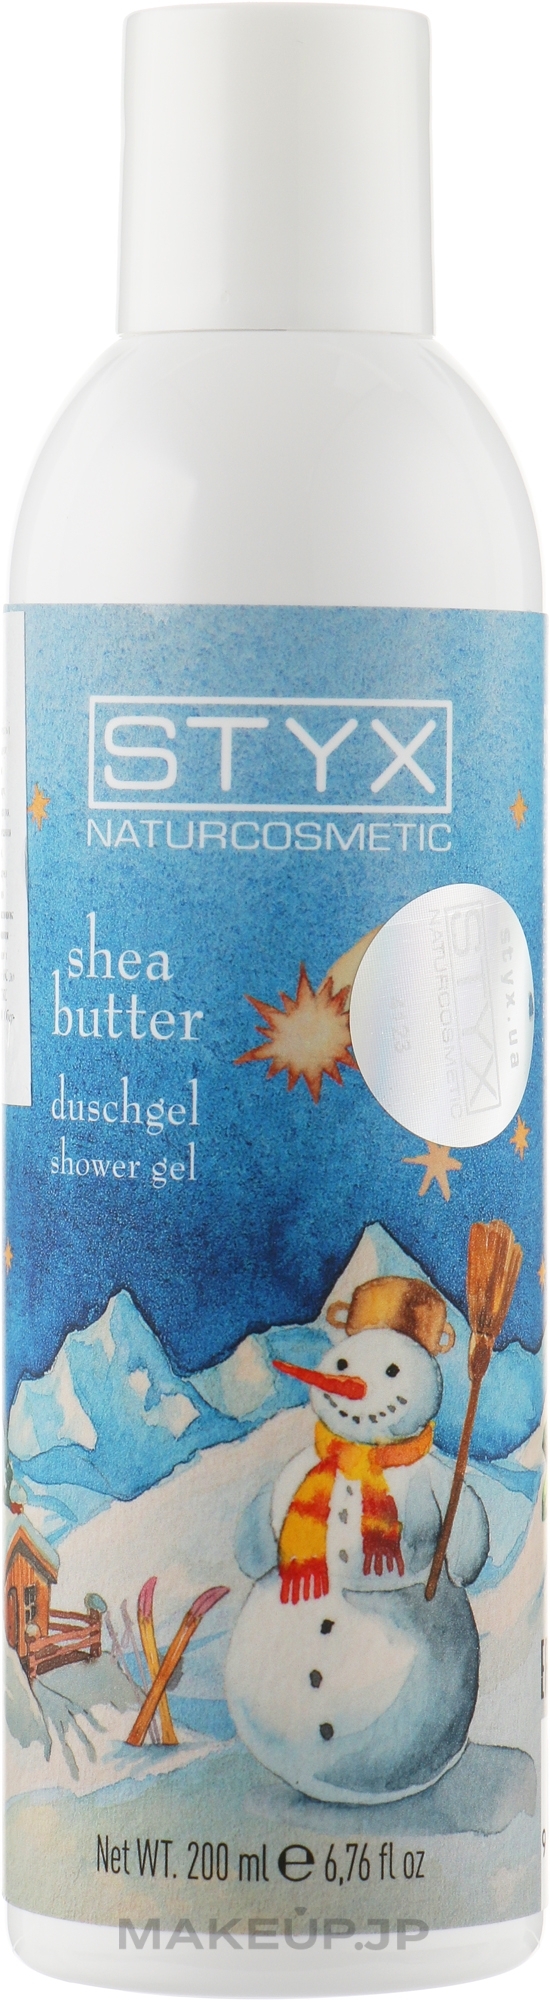 Christmas Shea Butter Shower Gel - Styx Naturcosmetic Shea Butter Shower Gel — photo 200 ml